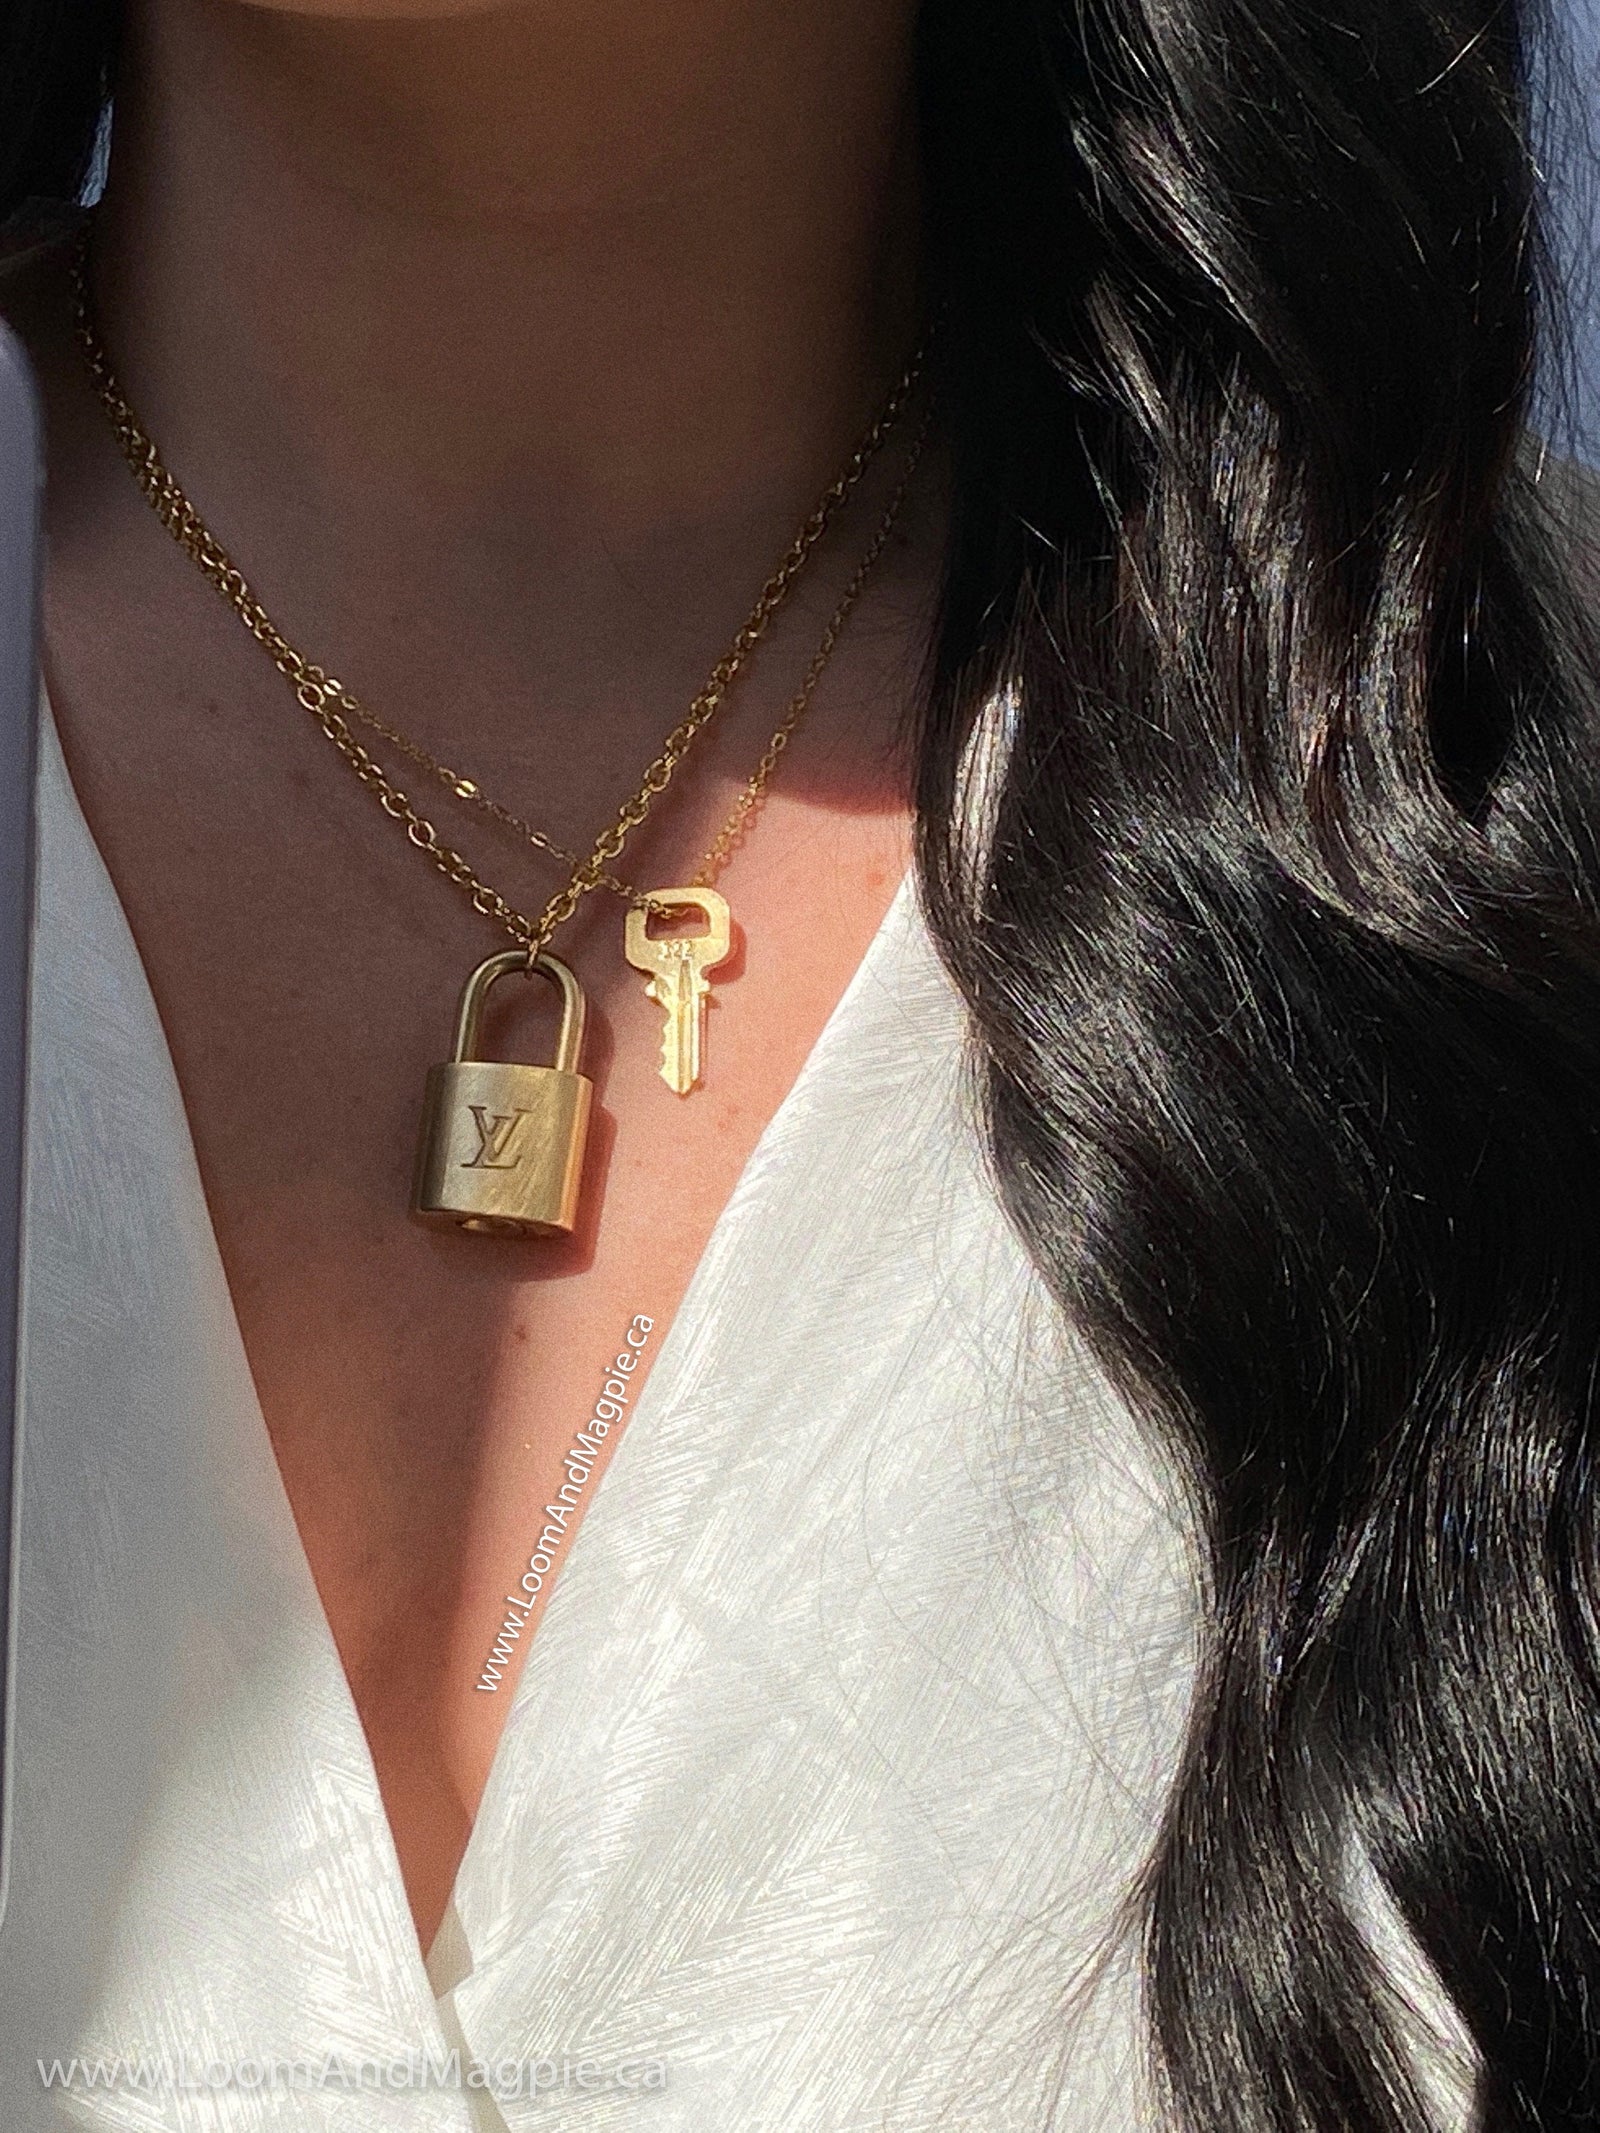 Louis Vuitton Lock & Key Charm Necklace